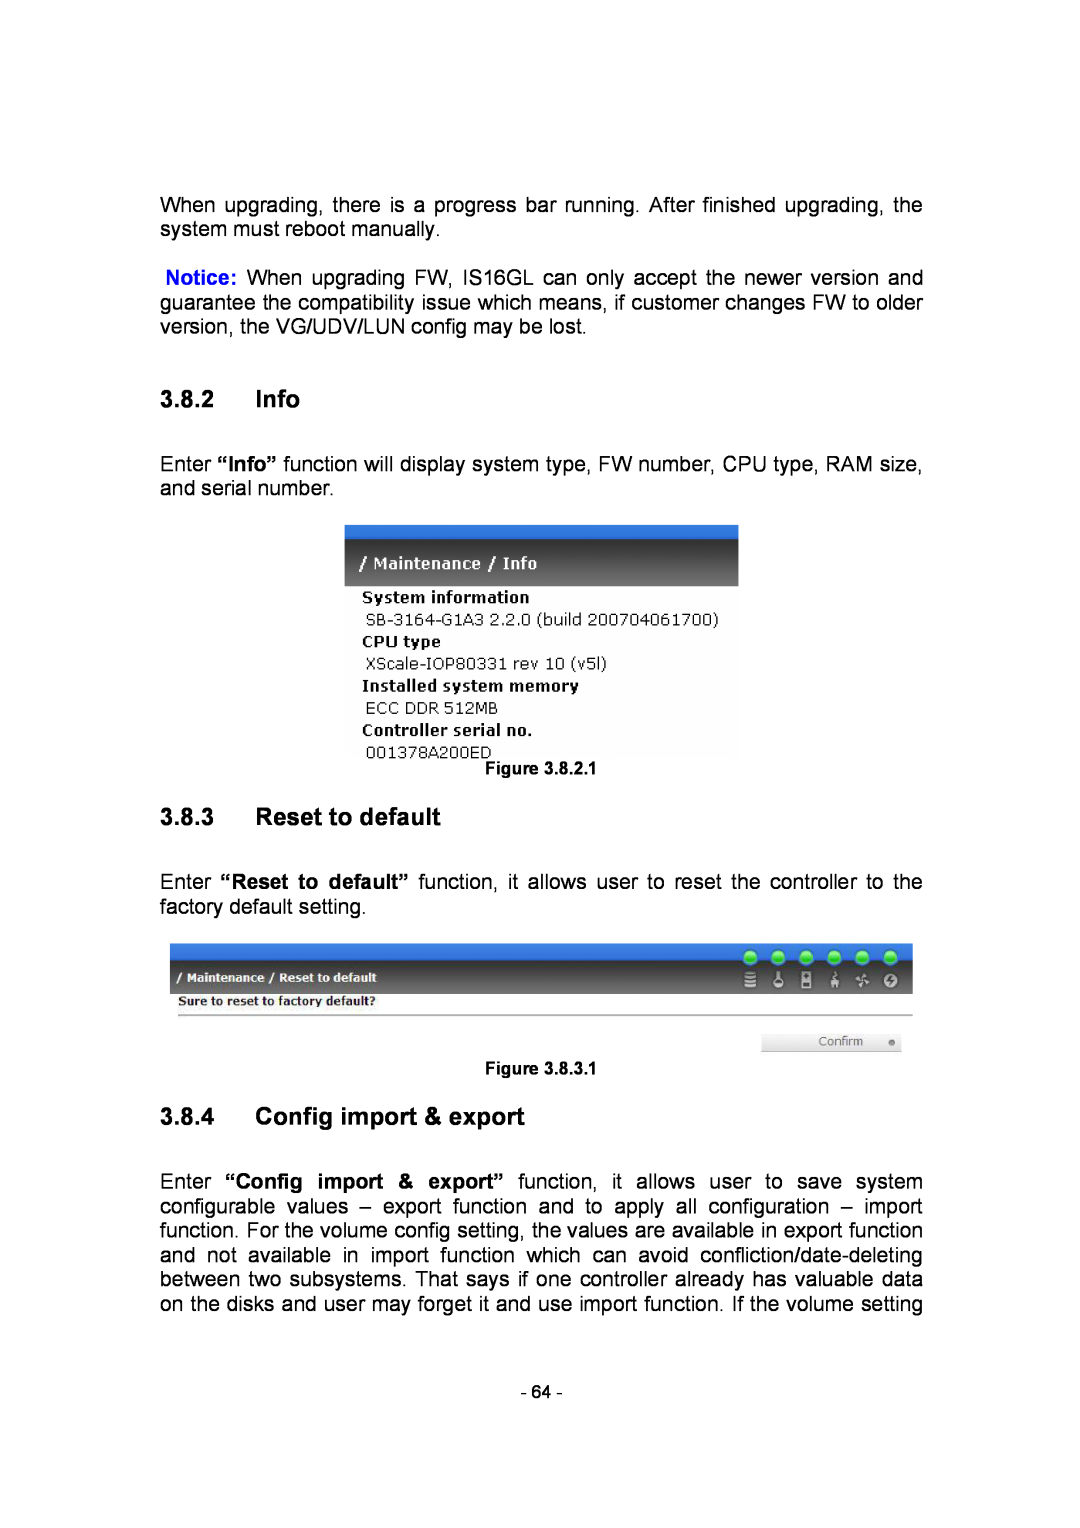 APC SCSI-SATA II manual Info, Reset to default, Config import & export 